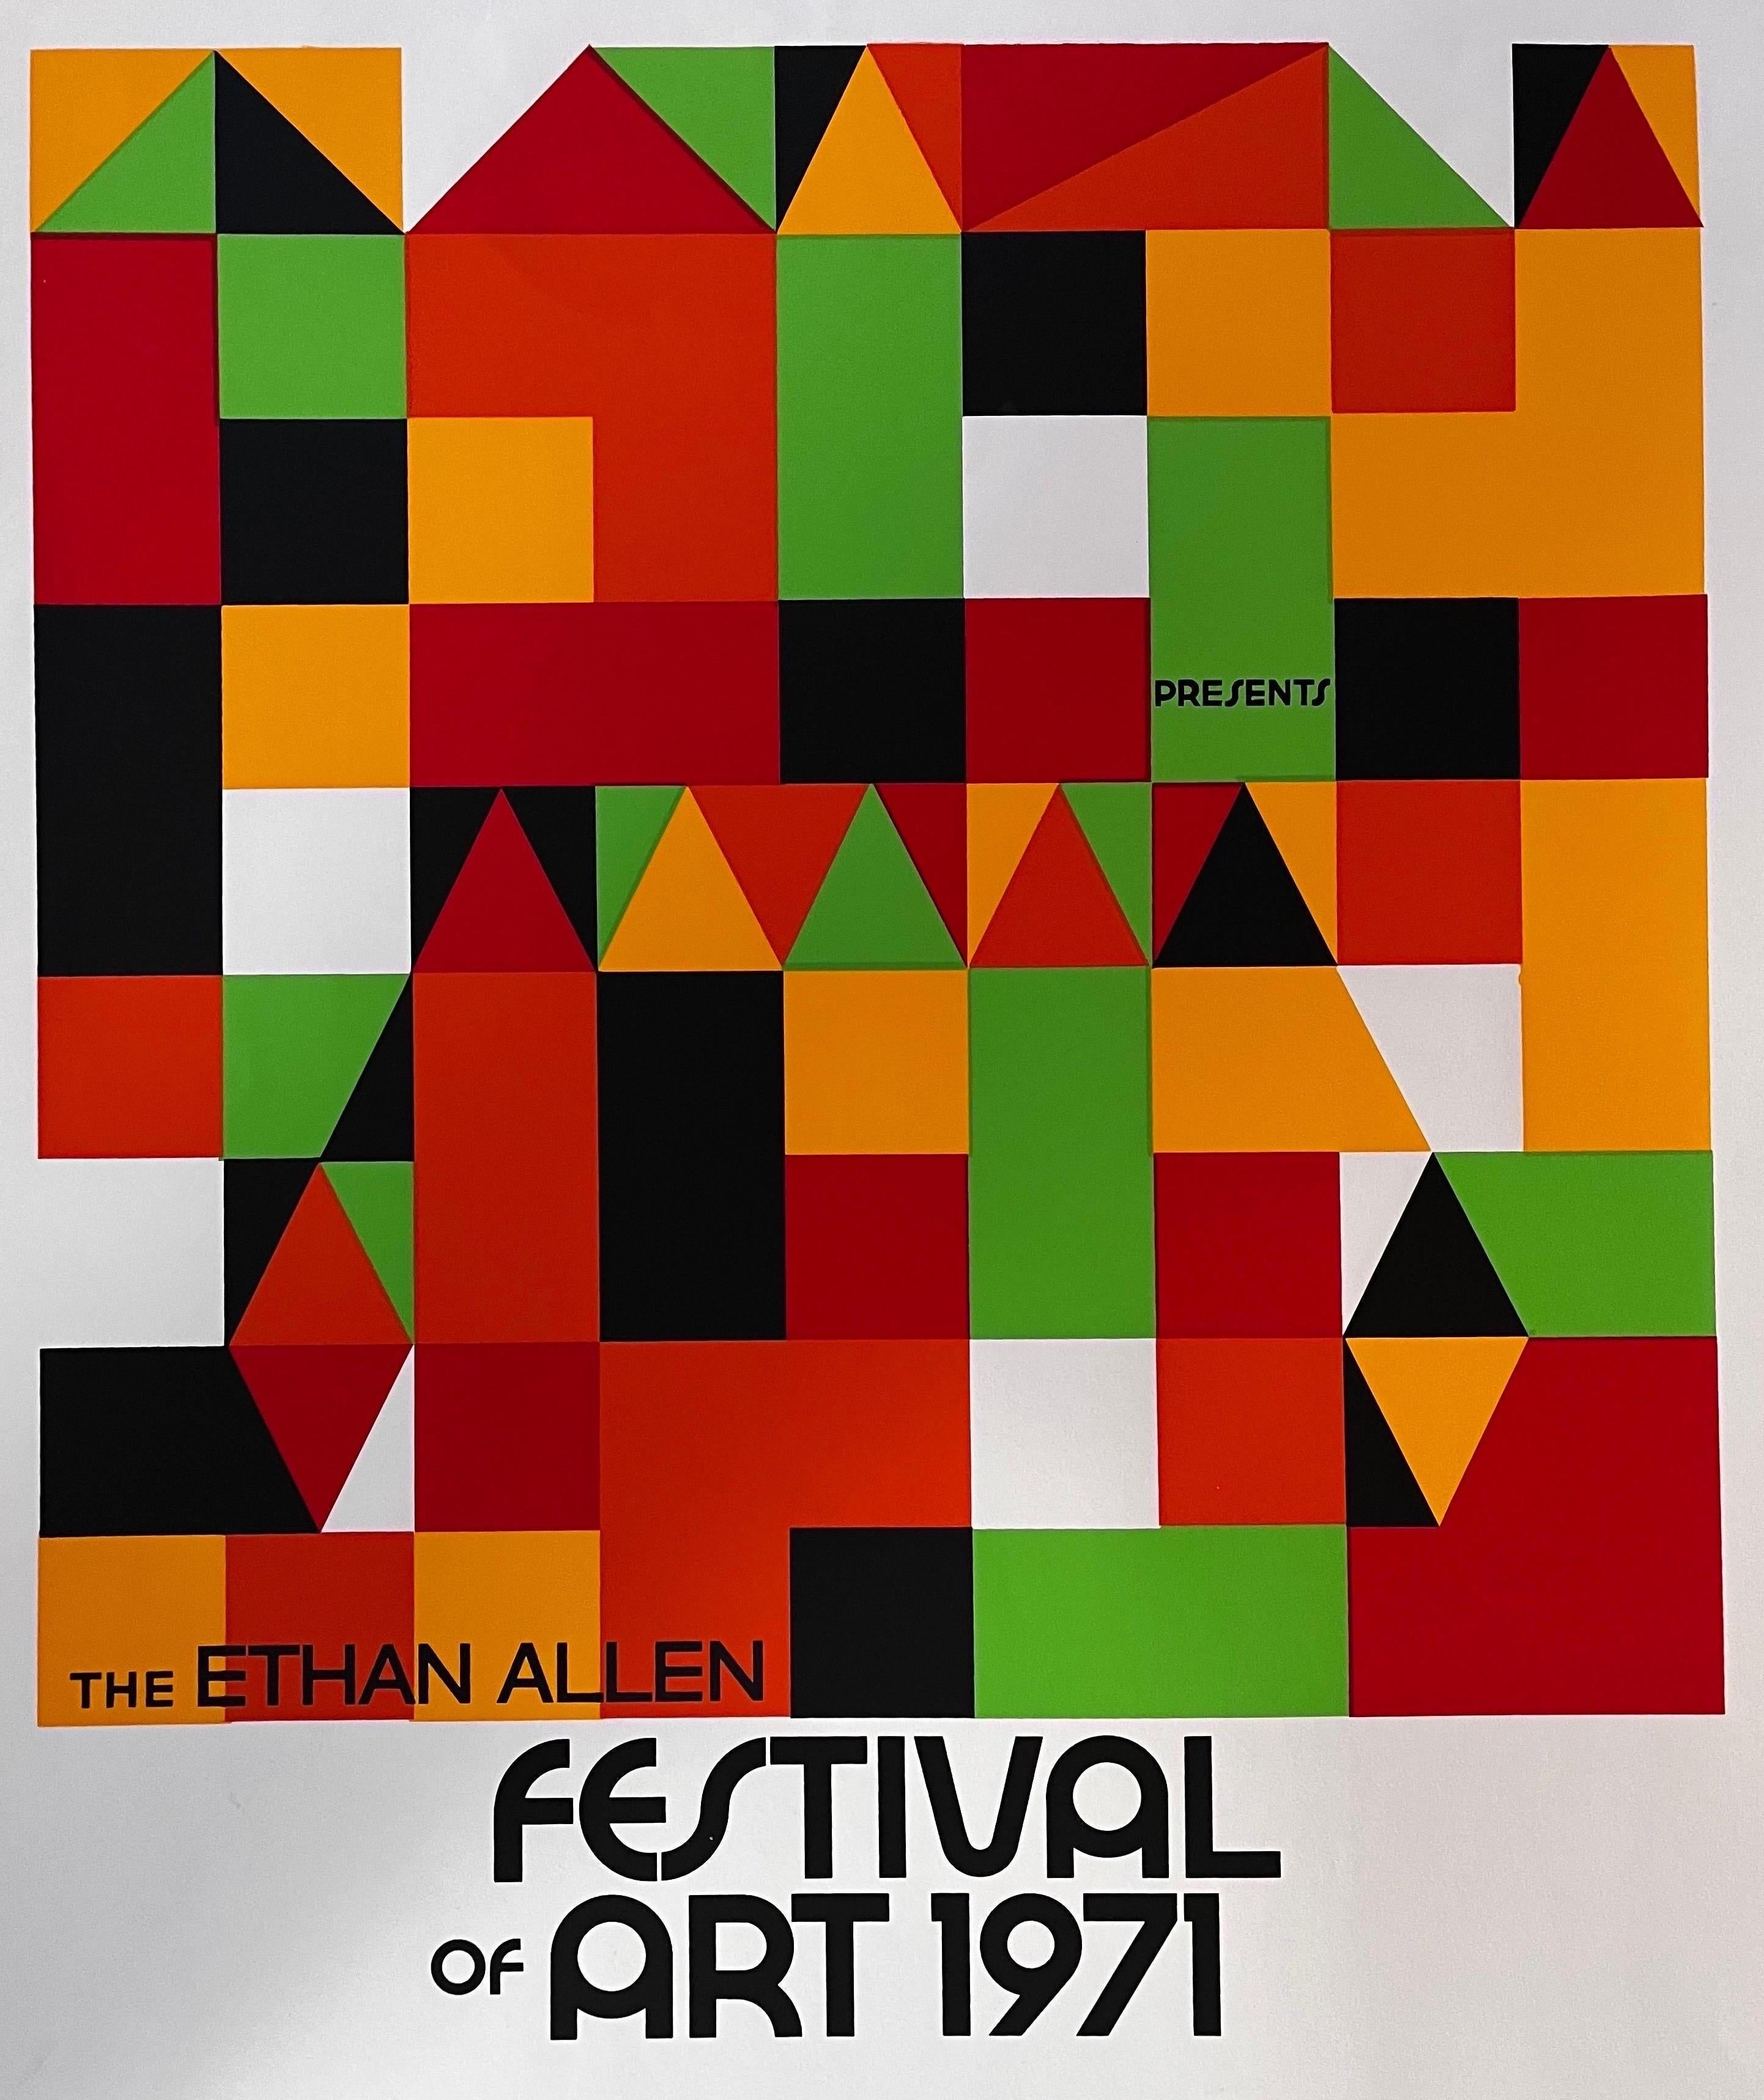 Rare Ethan Allen 1971 Festival of Art Lithograph / Poster
(je n'ai pas pu trouver un autre exemple de cette impression)

Grande couleur - grand mystère.